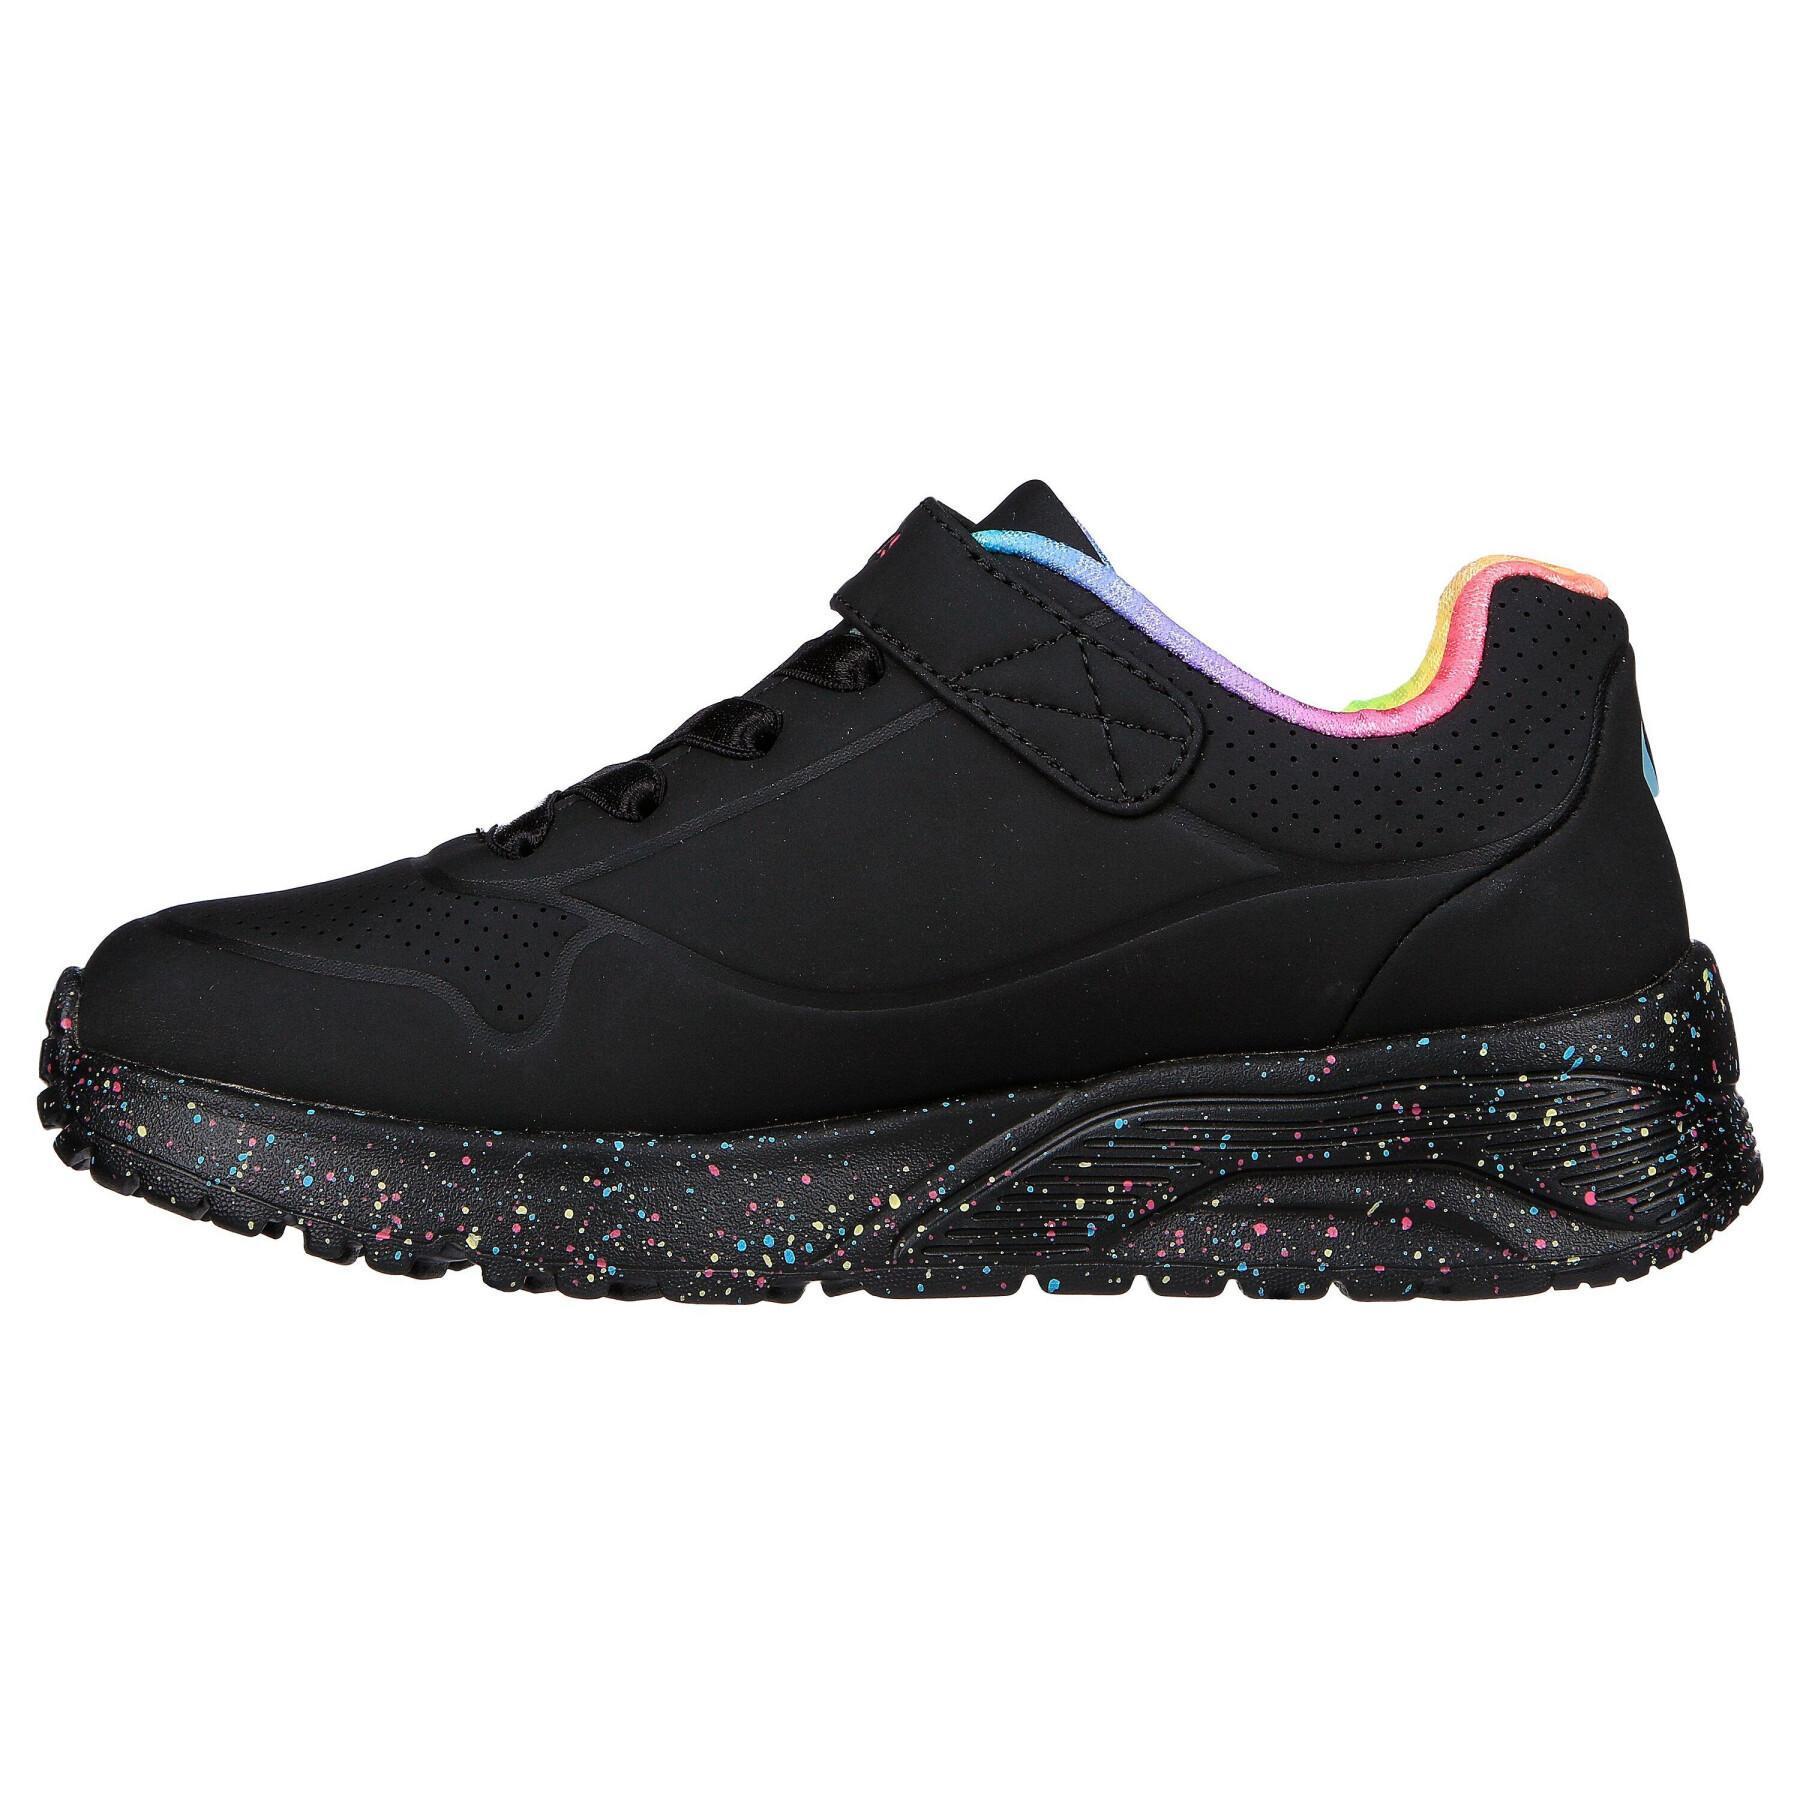 Sportschoenen voor meisjes Skechers Uno Lite-Rainbow Specks